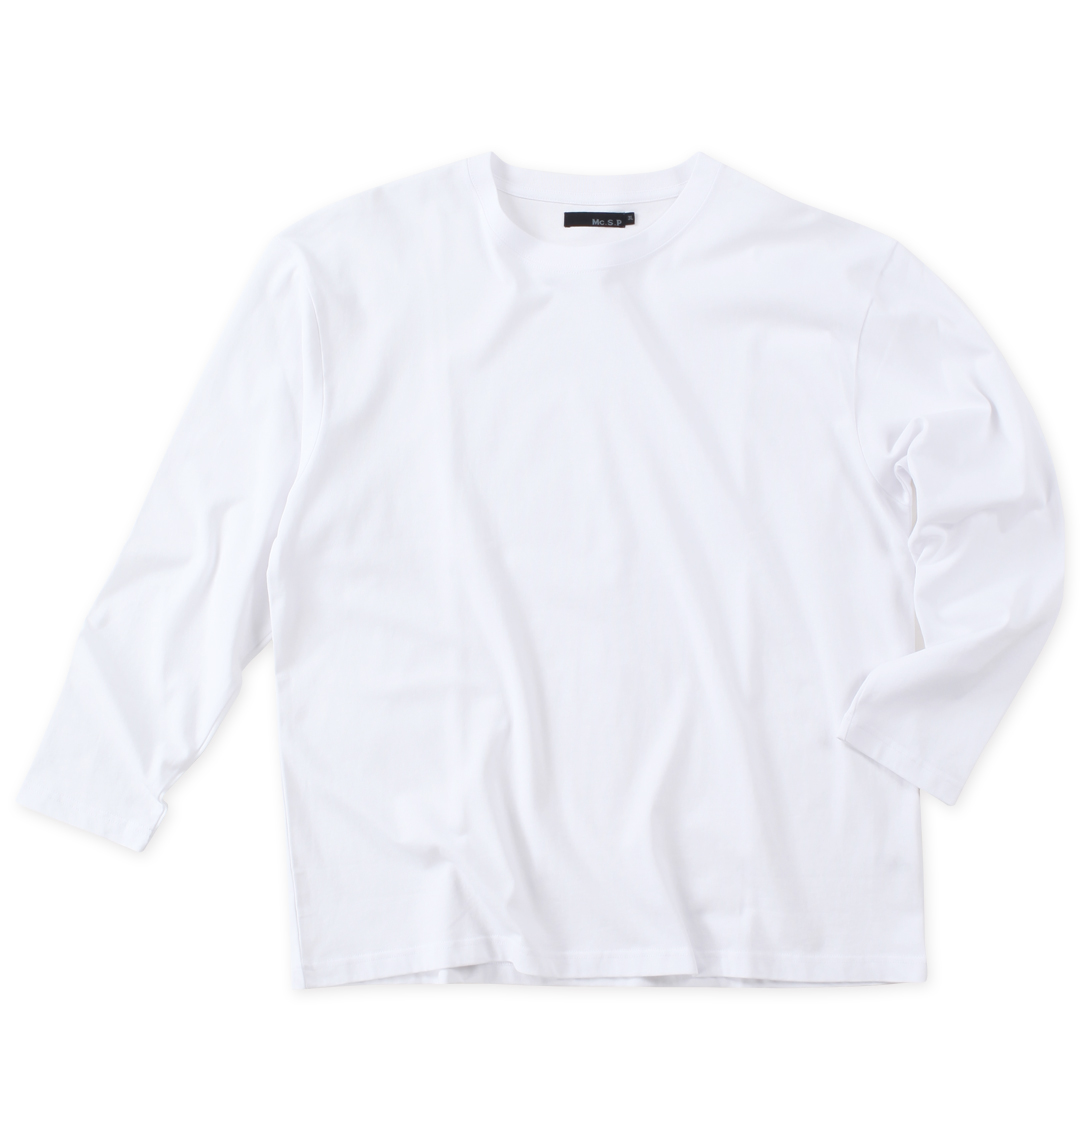 大きいサイズ 長袖Tシャツ (エムシーエスピー) 大きいサイズのメンズ服通販ミッド 1278-3344